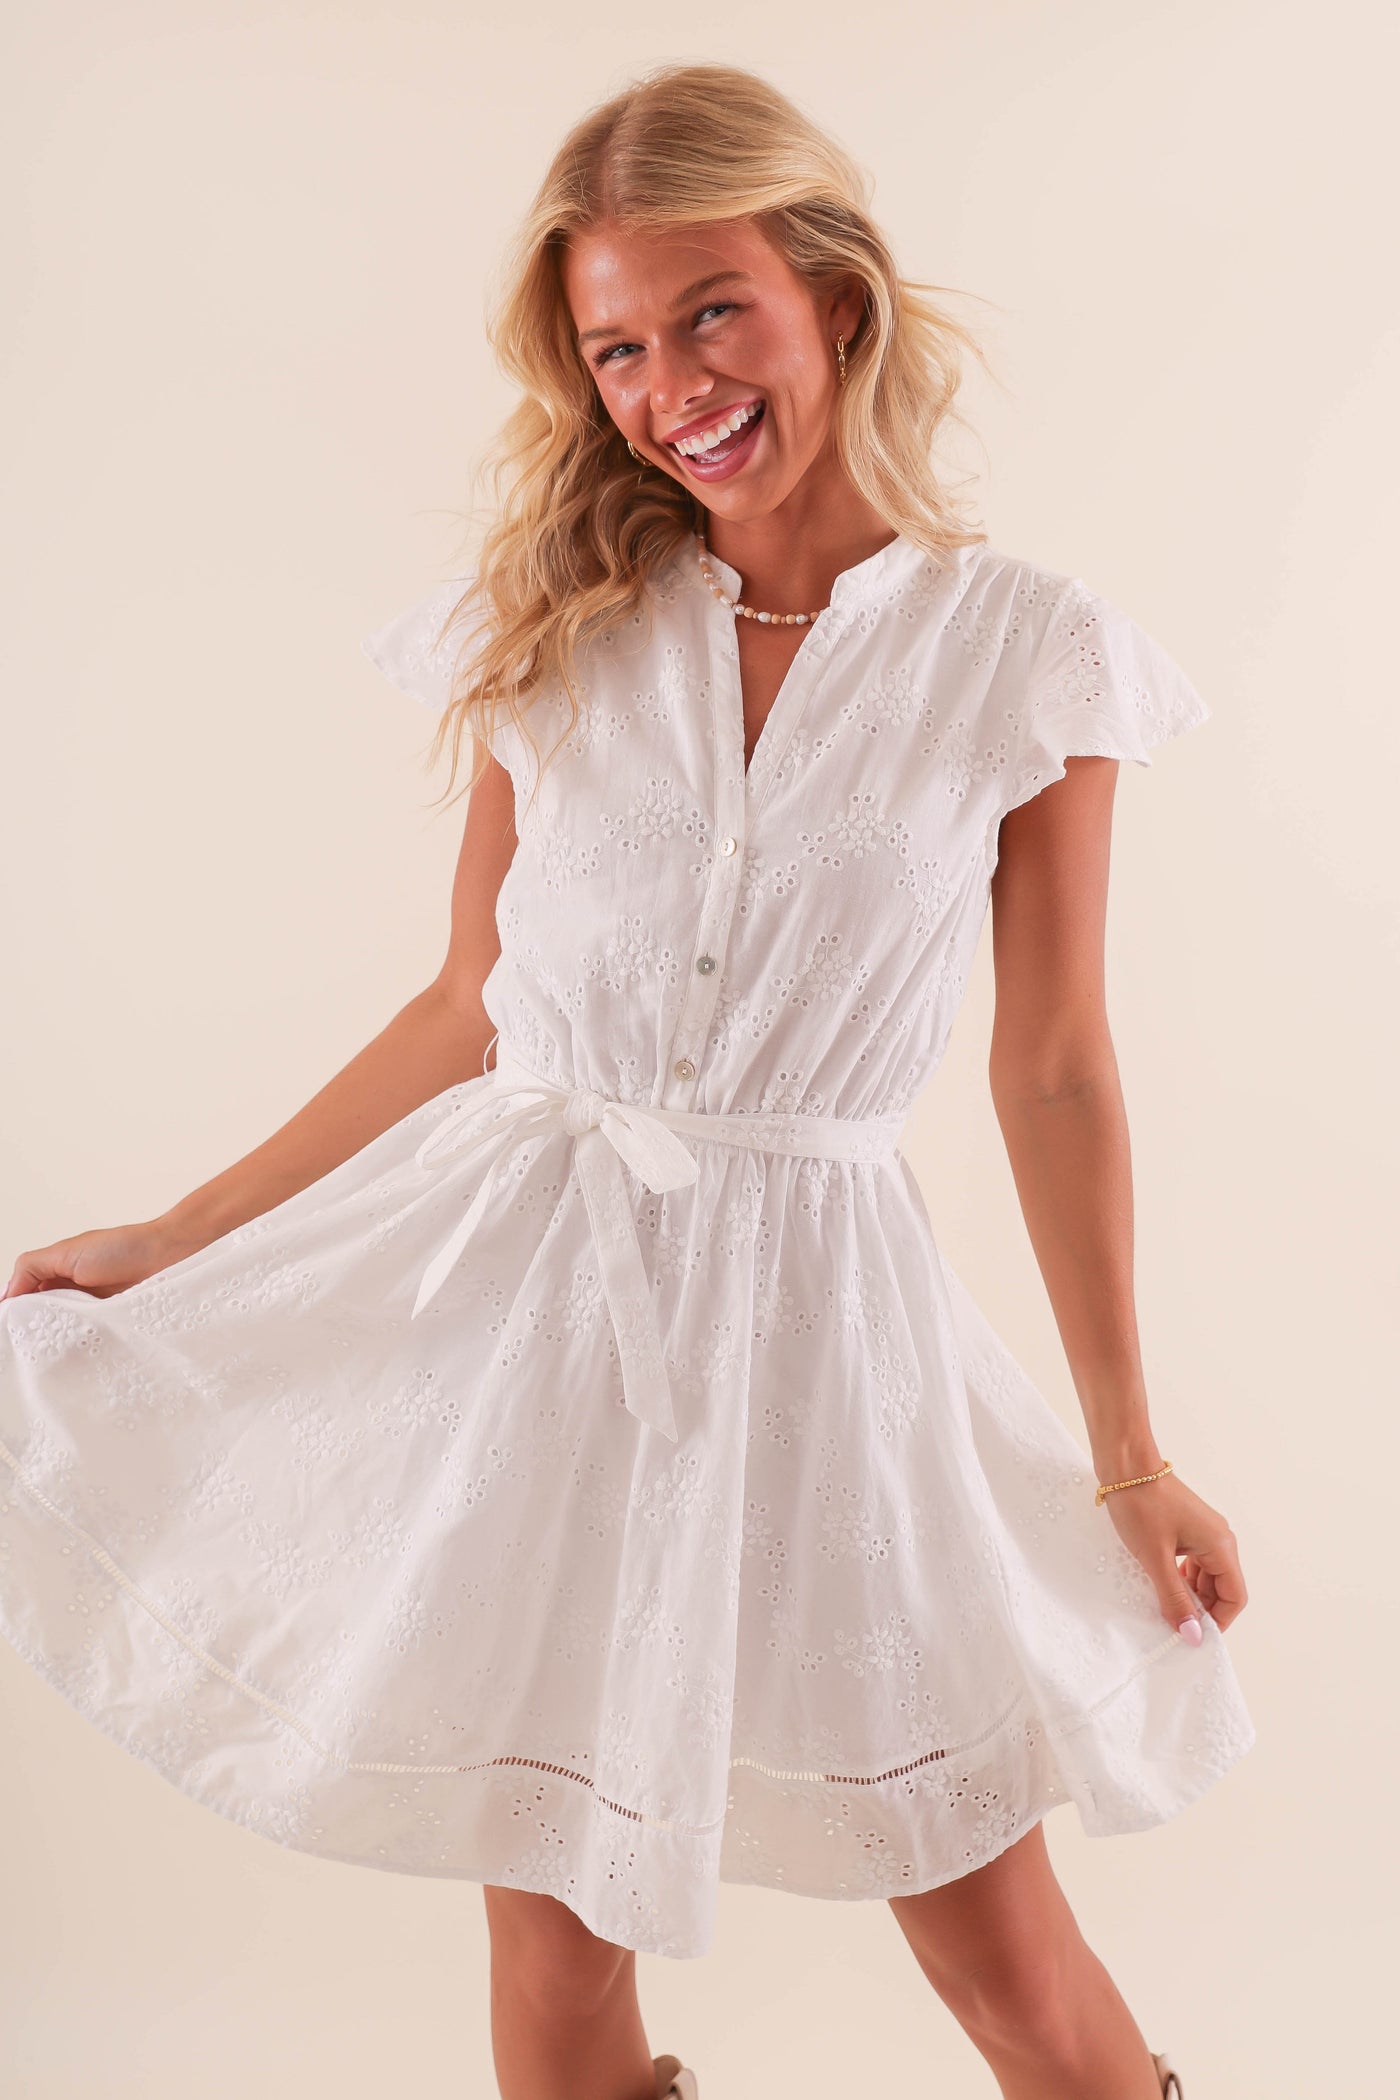 White Eyelet Button Down Dress- Women's White Summer Dresses